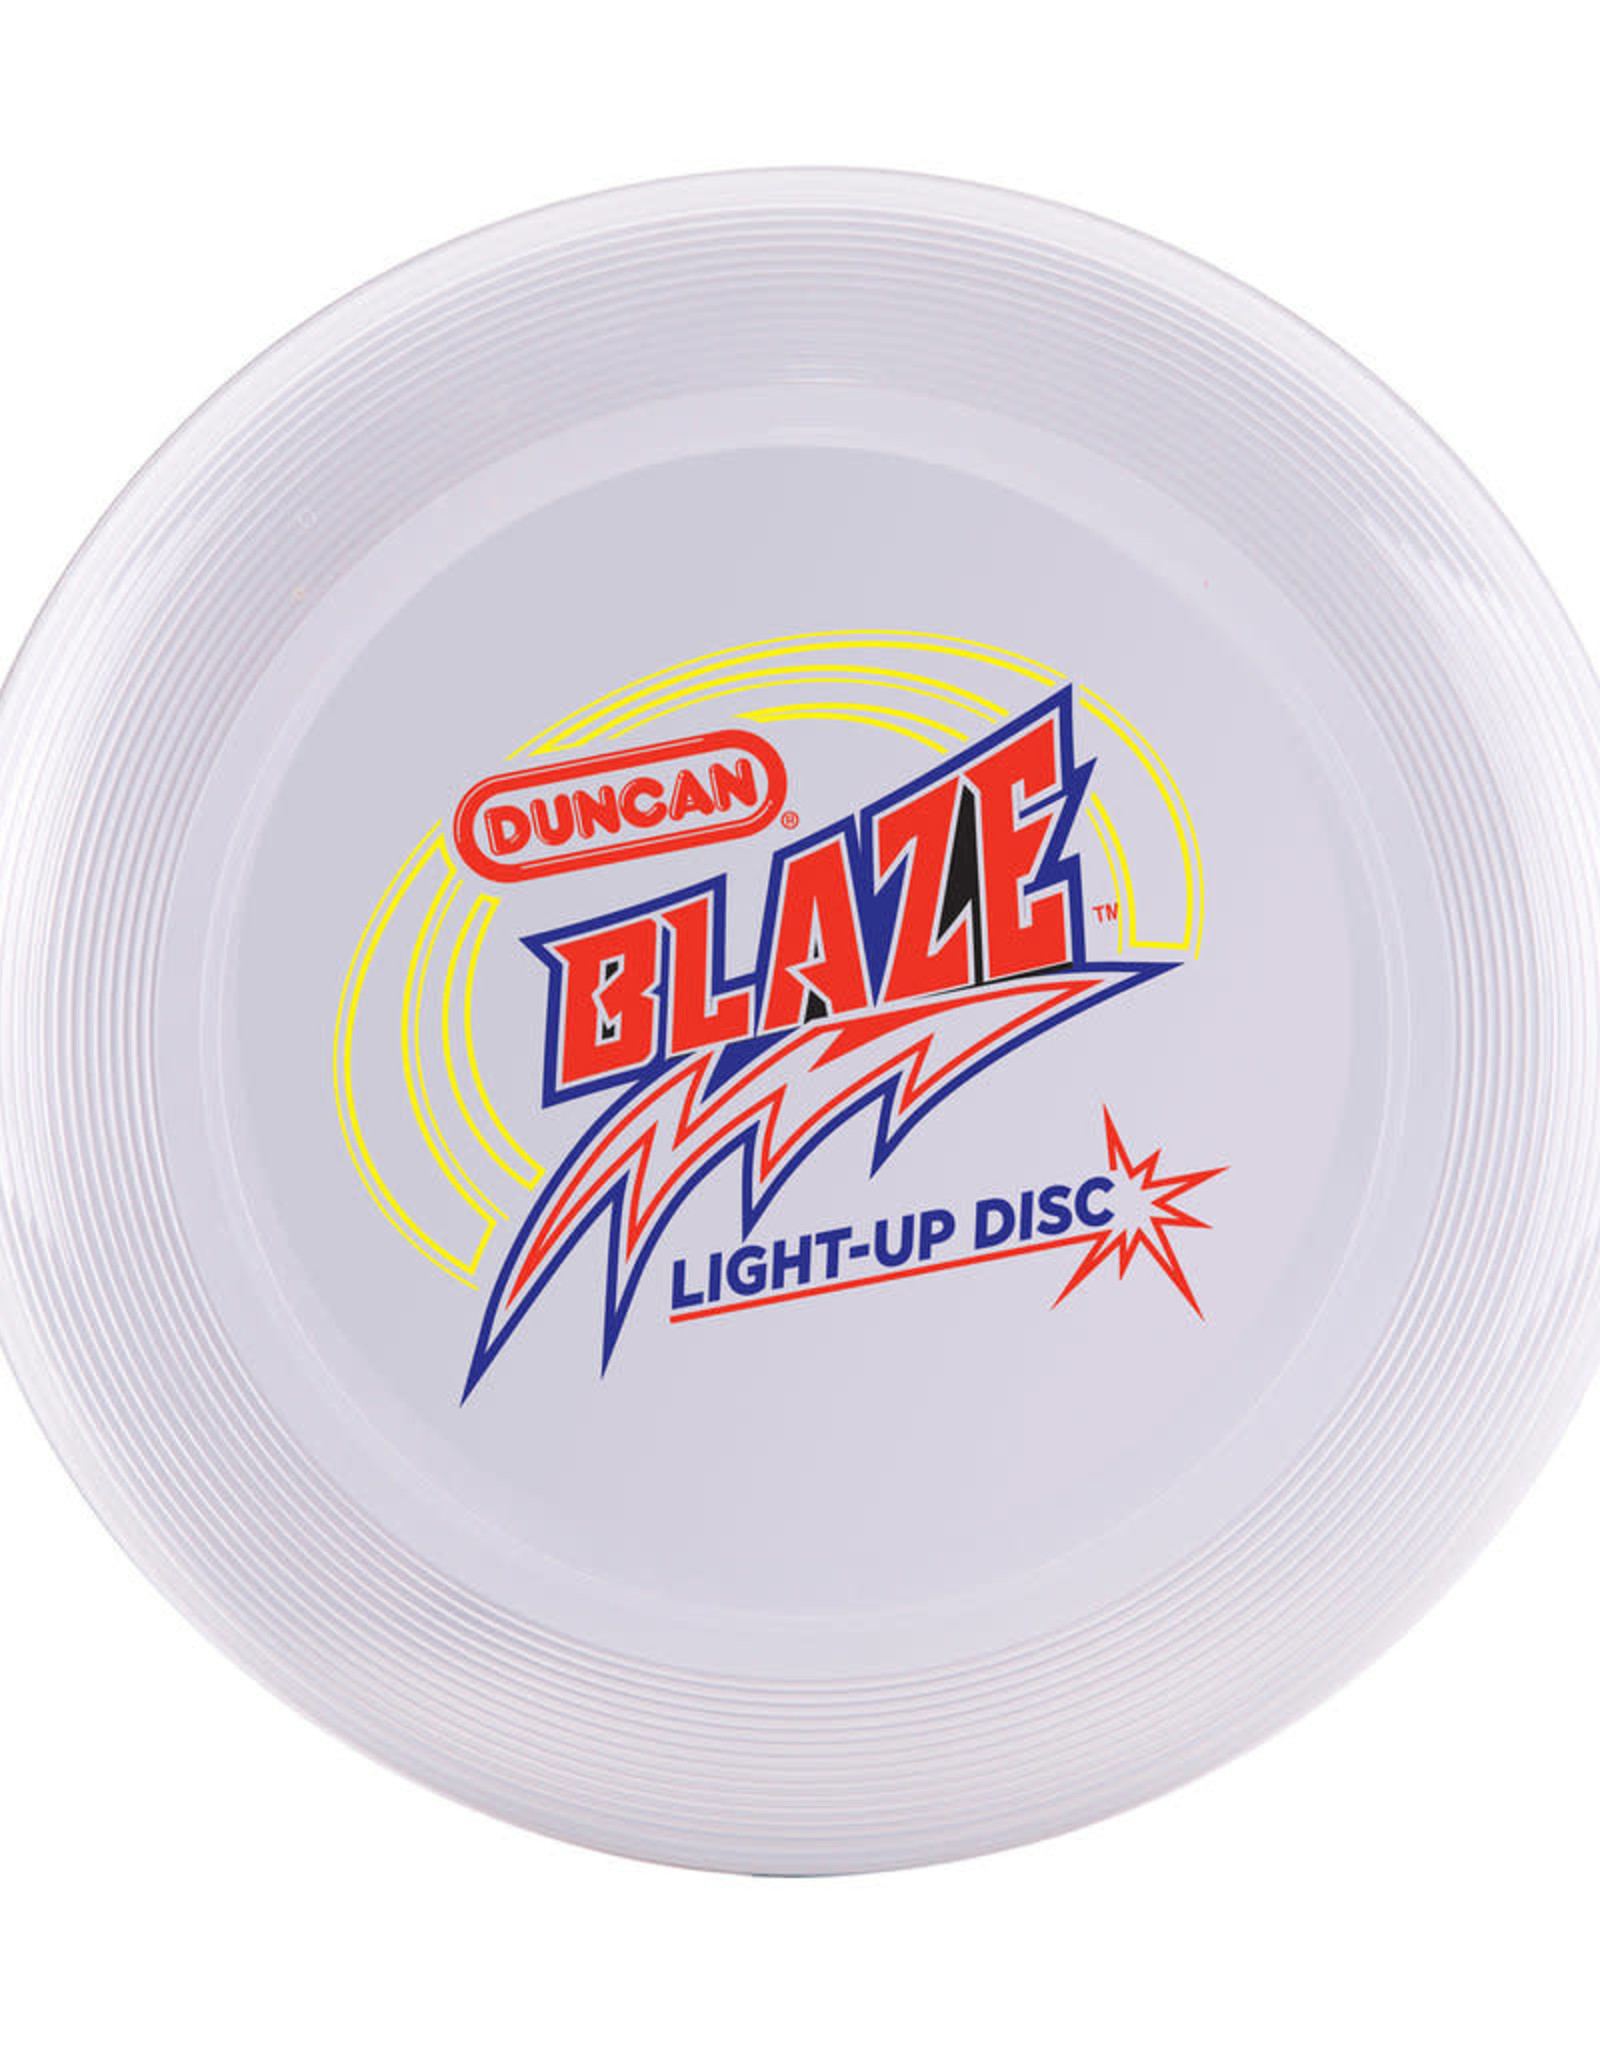 Duncan Blaze Light Up Disc